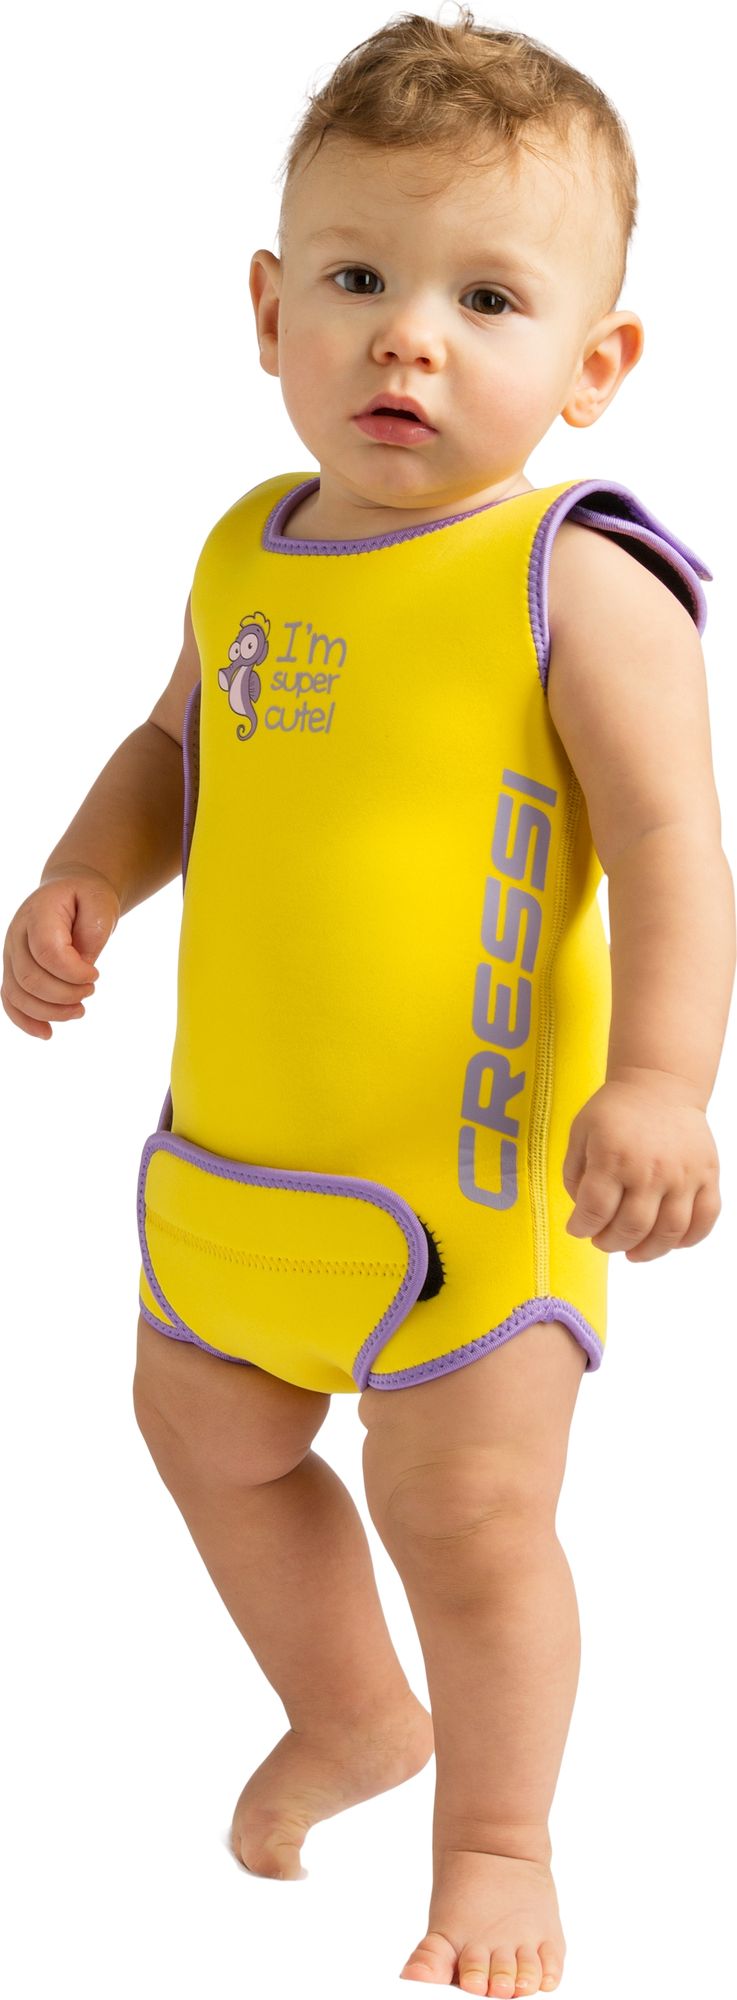 Cressi Baby Warmer Shorty Kid shorty kid spiaggia muta mute umid mutino snorkeling & beach neoprene wetsuit no sleeve shorty kid